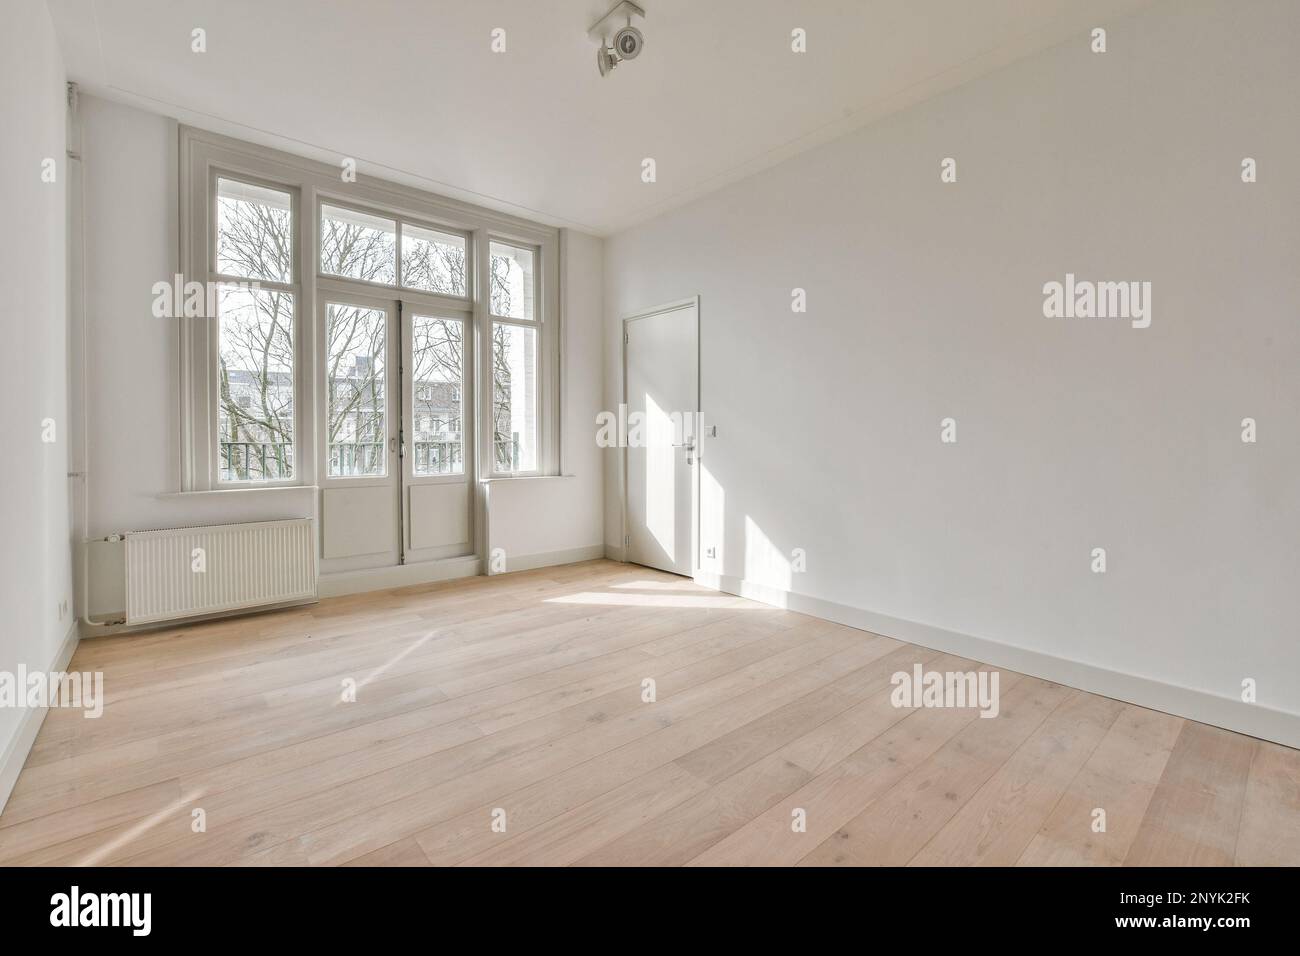 una habitación vacía con pisos de madera y grandes ventanas en las esquinas a la izquierda es una pared blanca Foto de stock